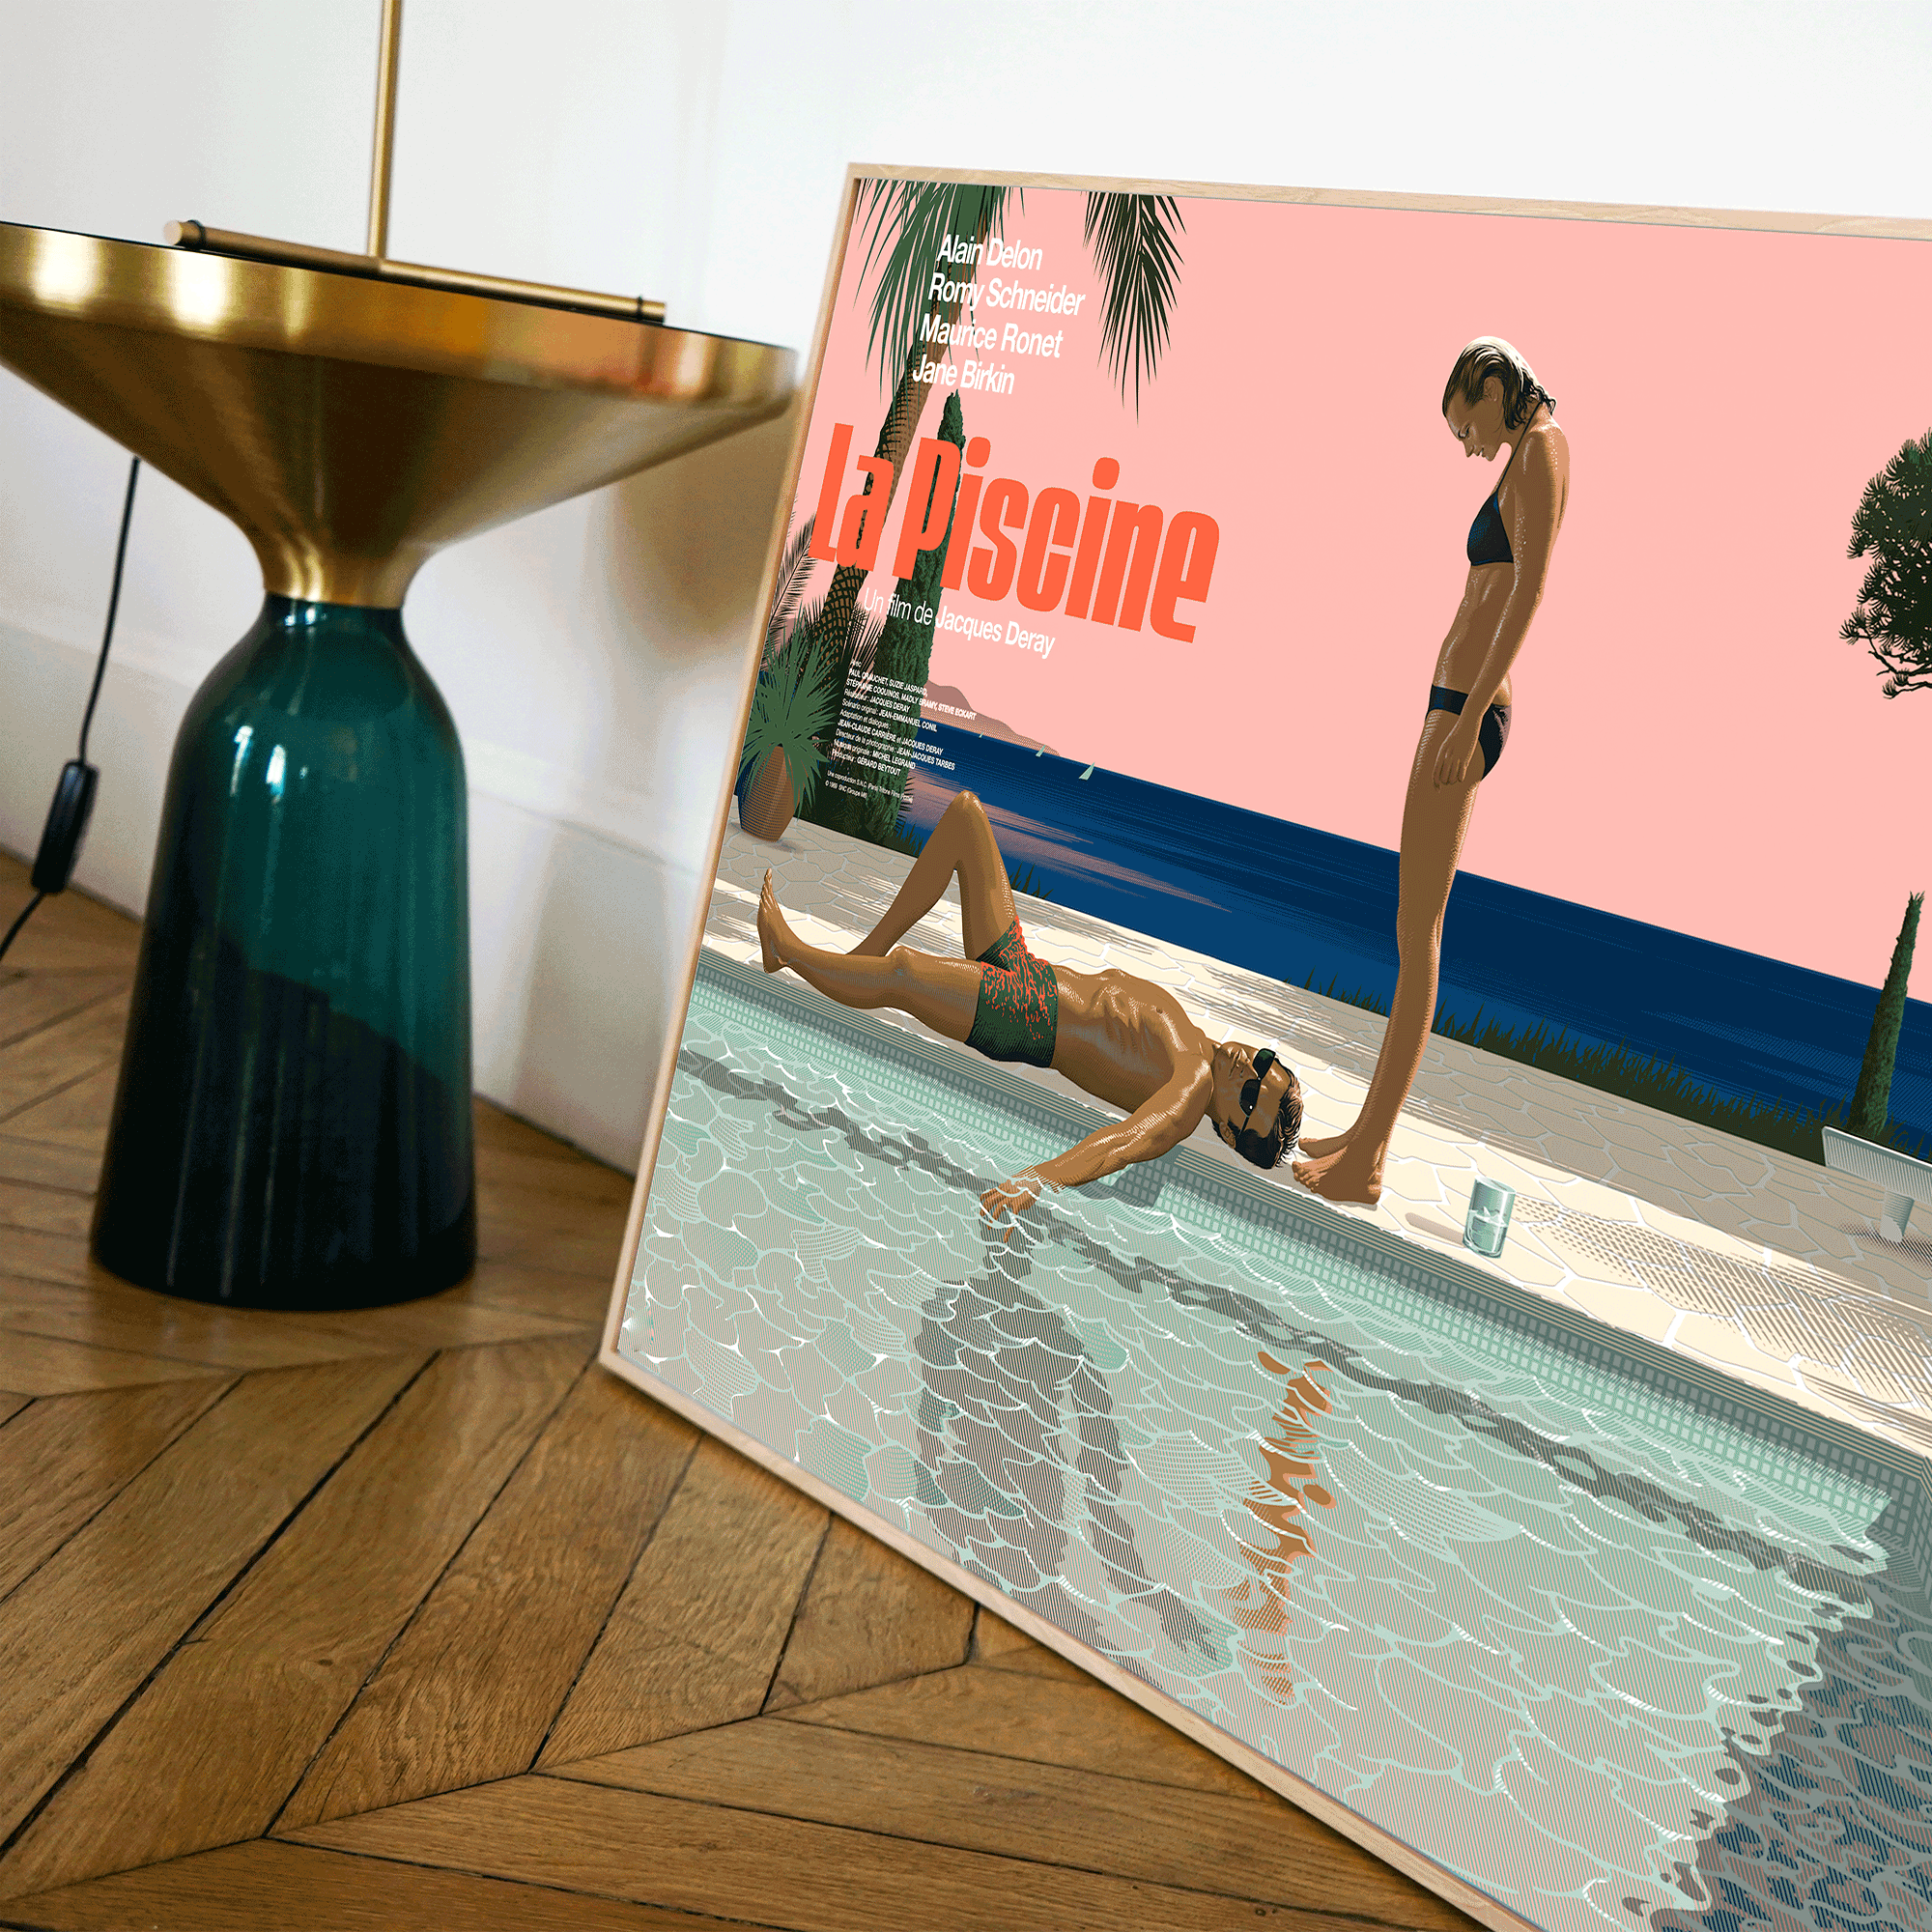 plakat - maison d'edition d'affiche en sérigraphie - affiche de cinema la piscine réalisée par Laurent durieux - imprimée en edition limitée numérotee main